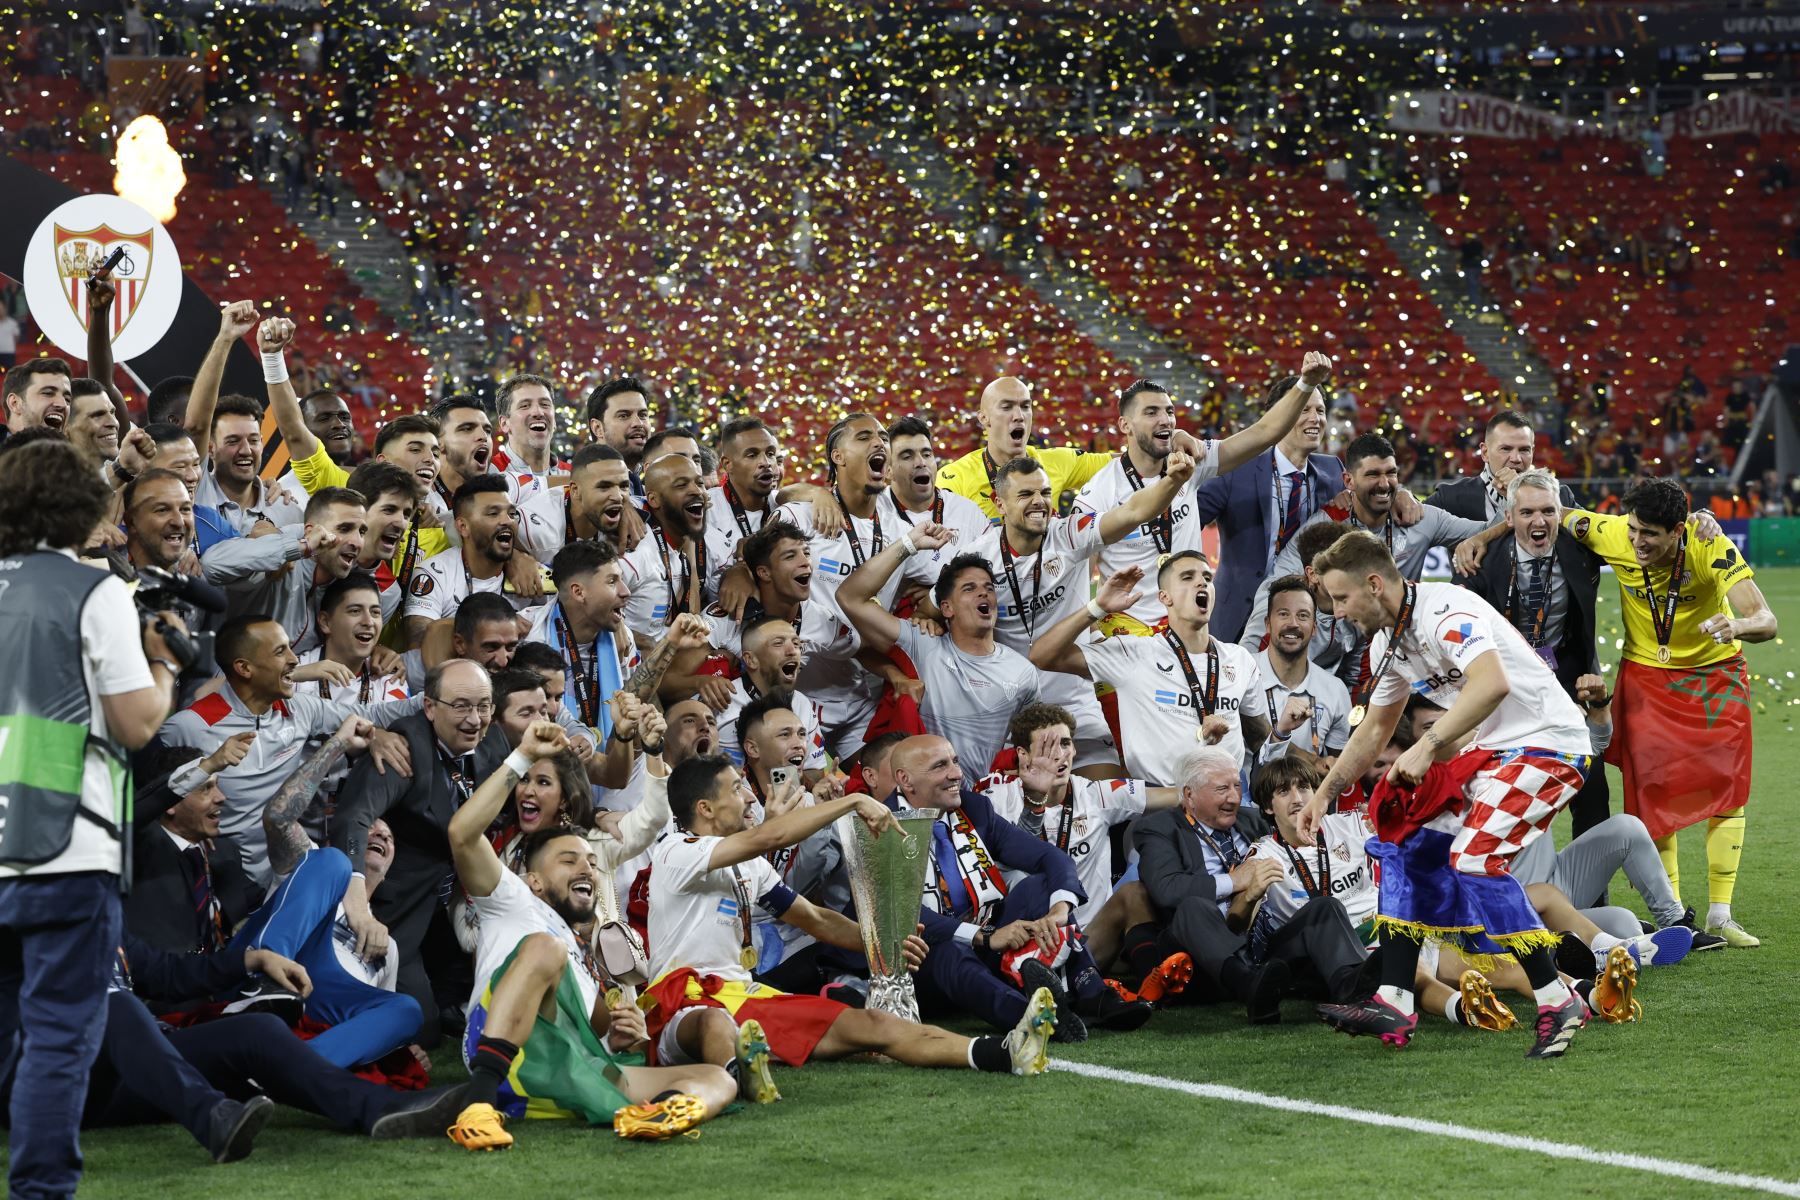 Los jugadores del Sevilla celebran el último gol conseguido en la tanda de penaltis para proclamarse campeones de la Europa League en el encuentro que han disputado este miércoles frente a la Roma en el Puskas Arena de Budapest.
Foto: EFE